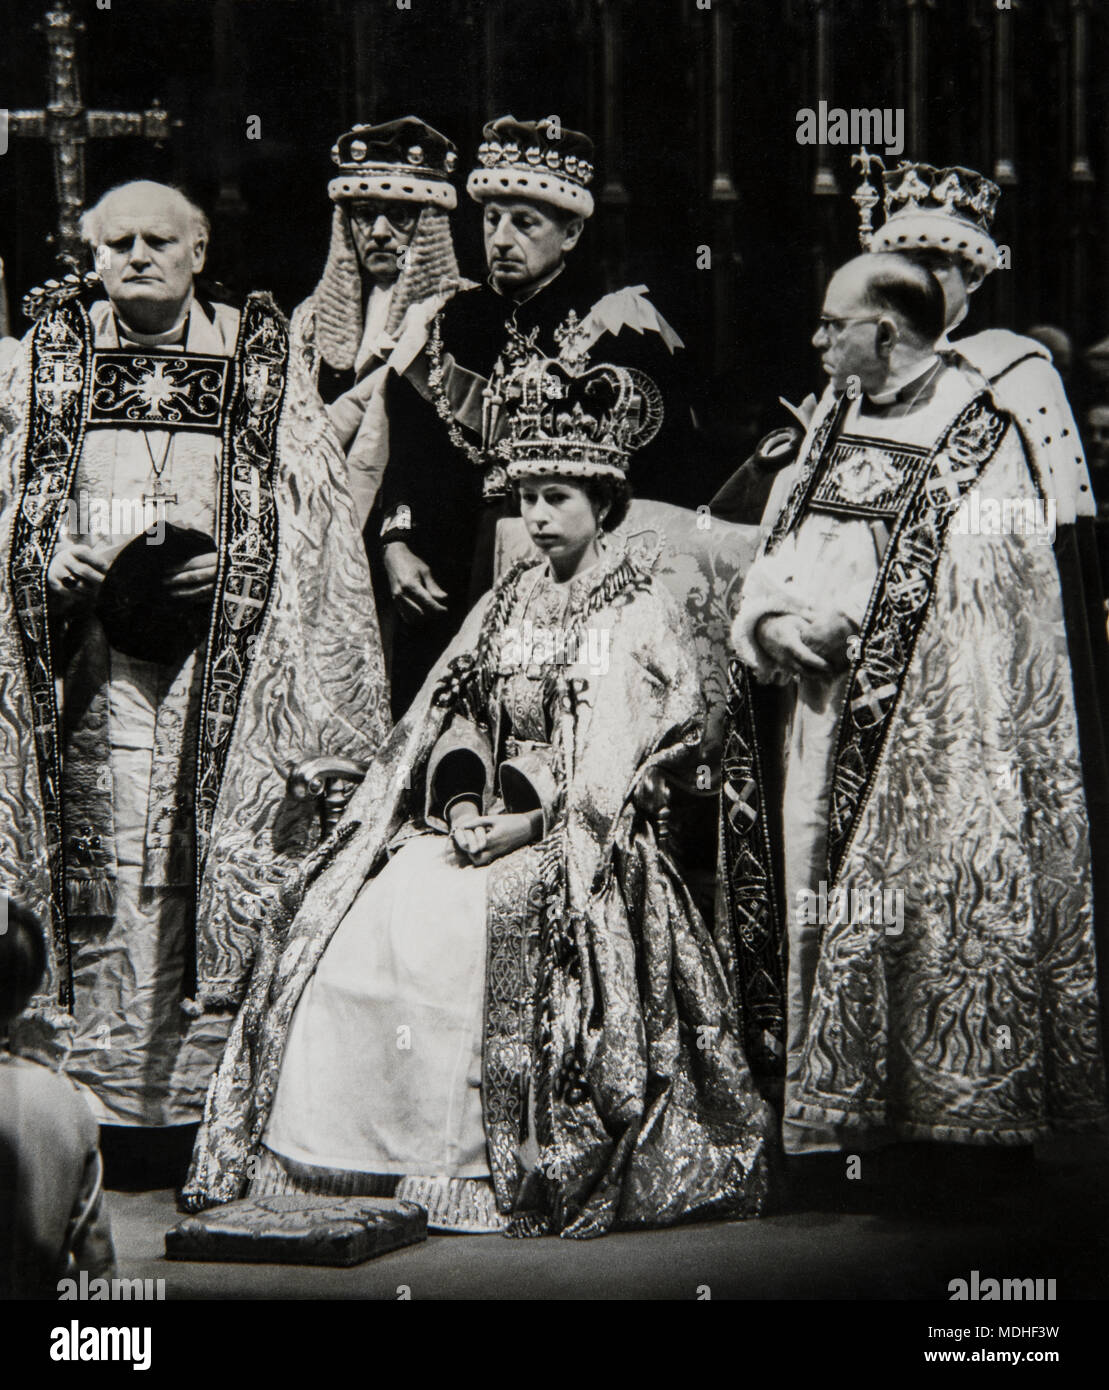 Die Kronung Von Konigin Elizabeth Ii Am 2 Juni 1953 In Der Westminster Abbey London Stockfotografie Alamy